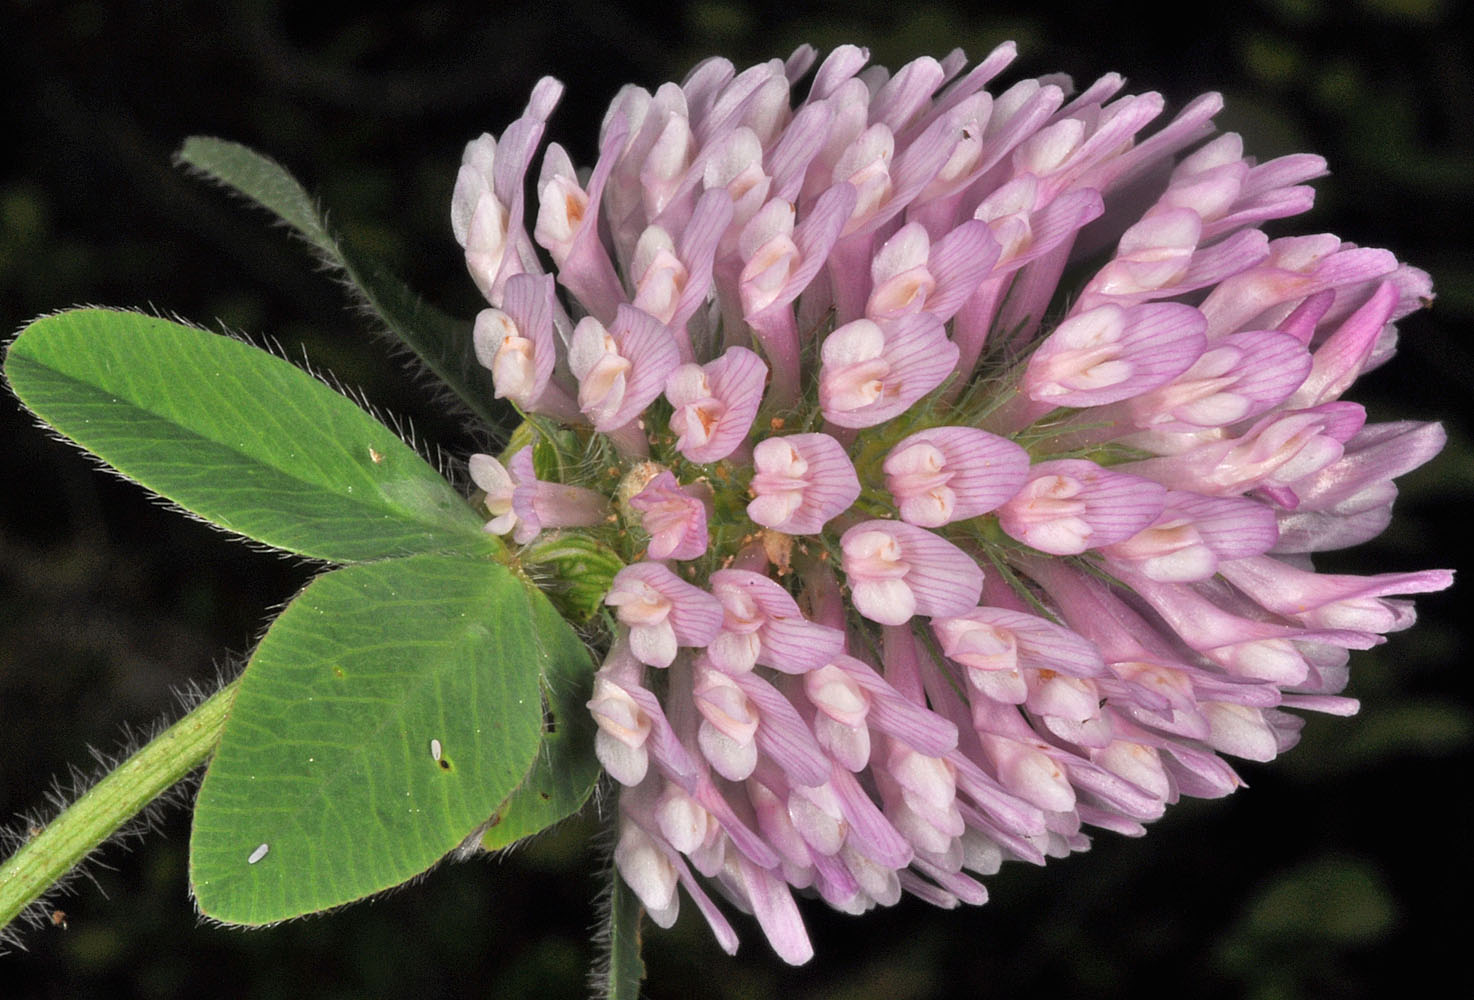 Flora of Eastern Washington Image: Trifolium pratense